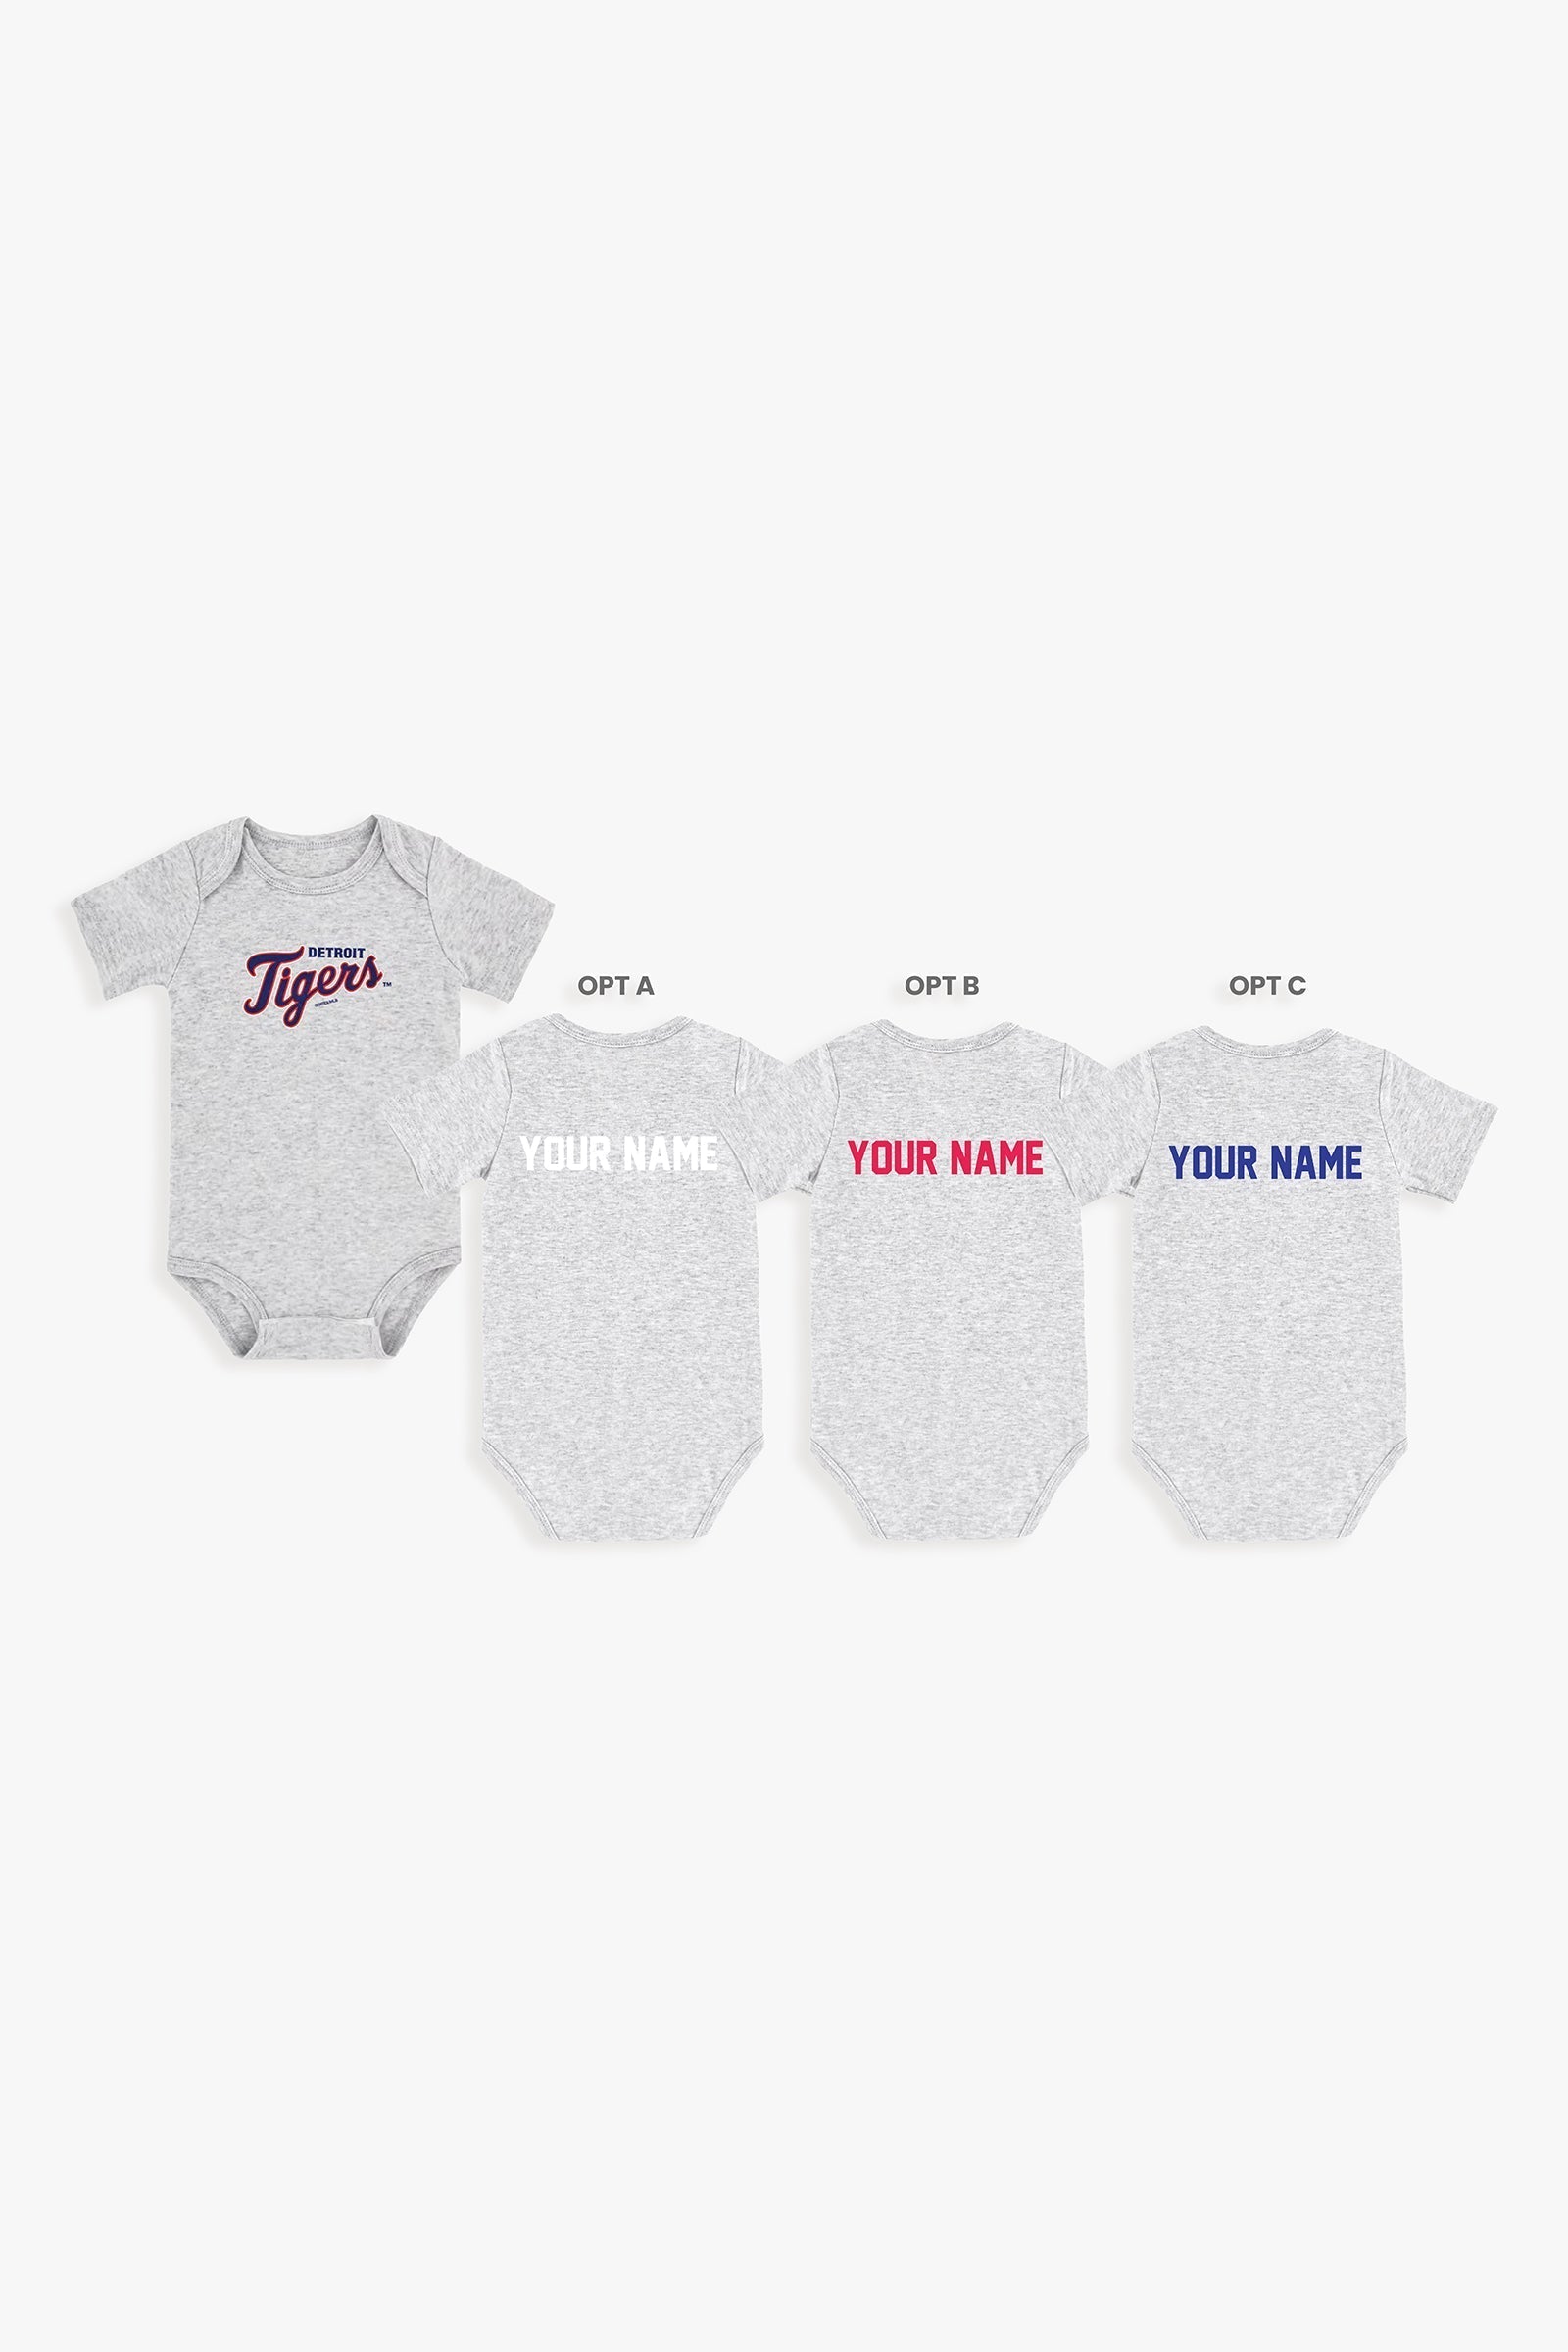 Customizable MLB Baby Onesie Bodysuit in Grey (18-24 Months)